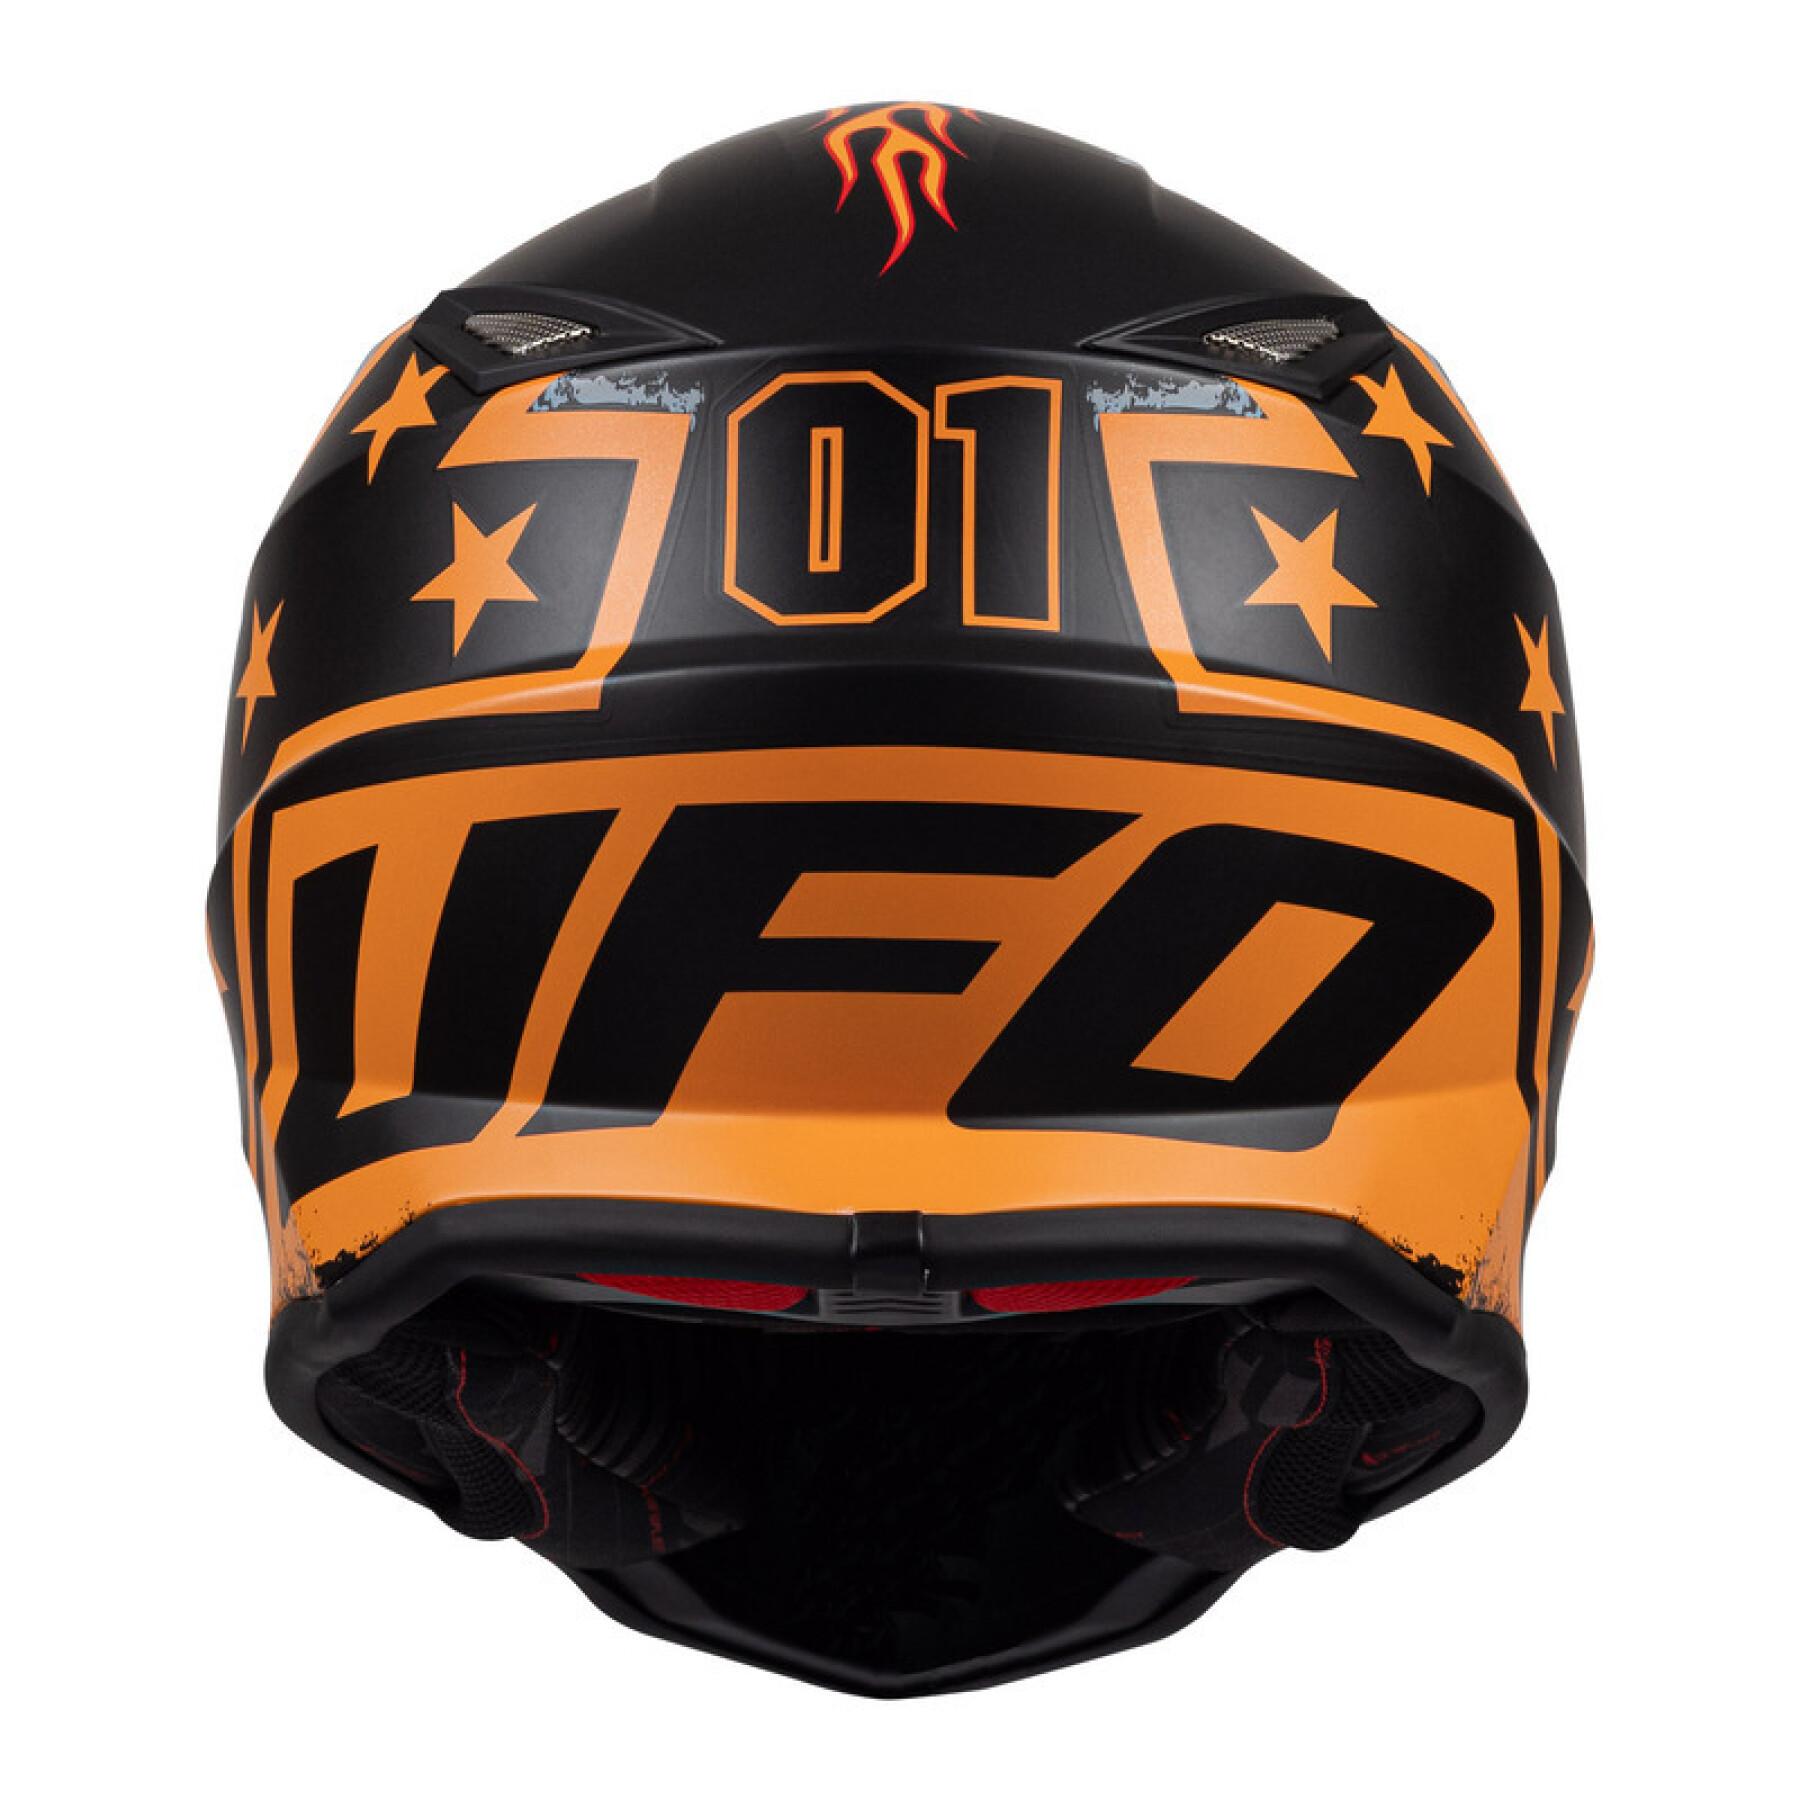 Motorcycle helmet UFO General